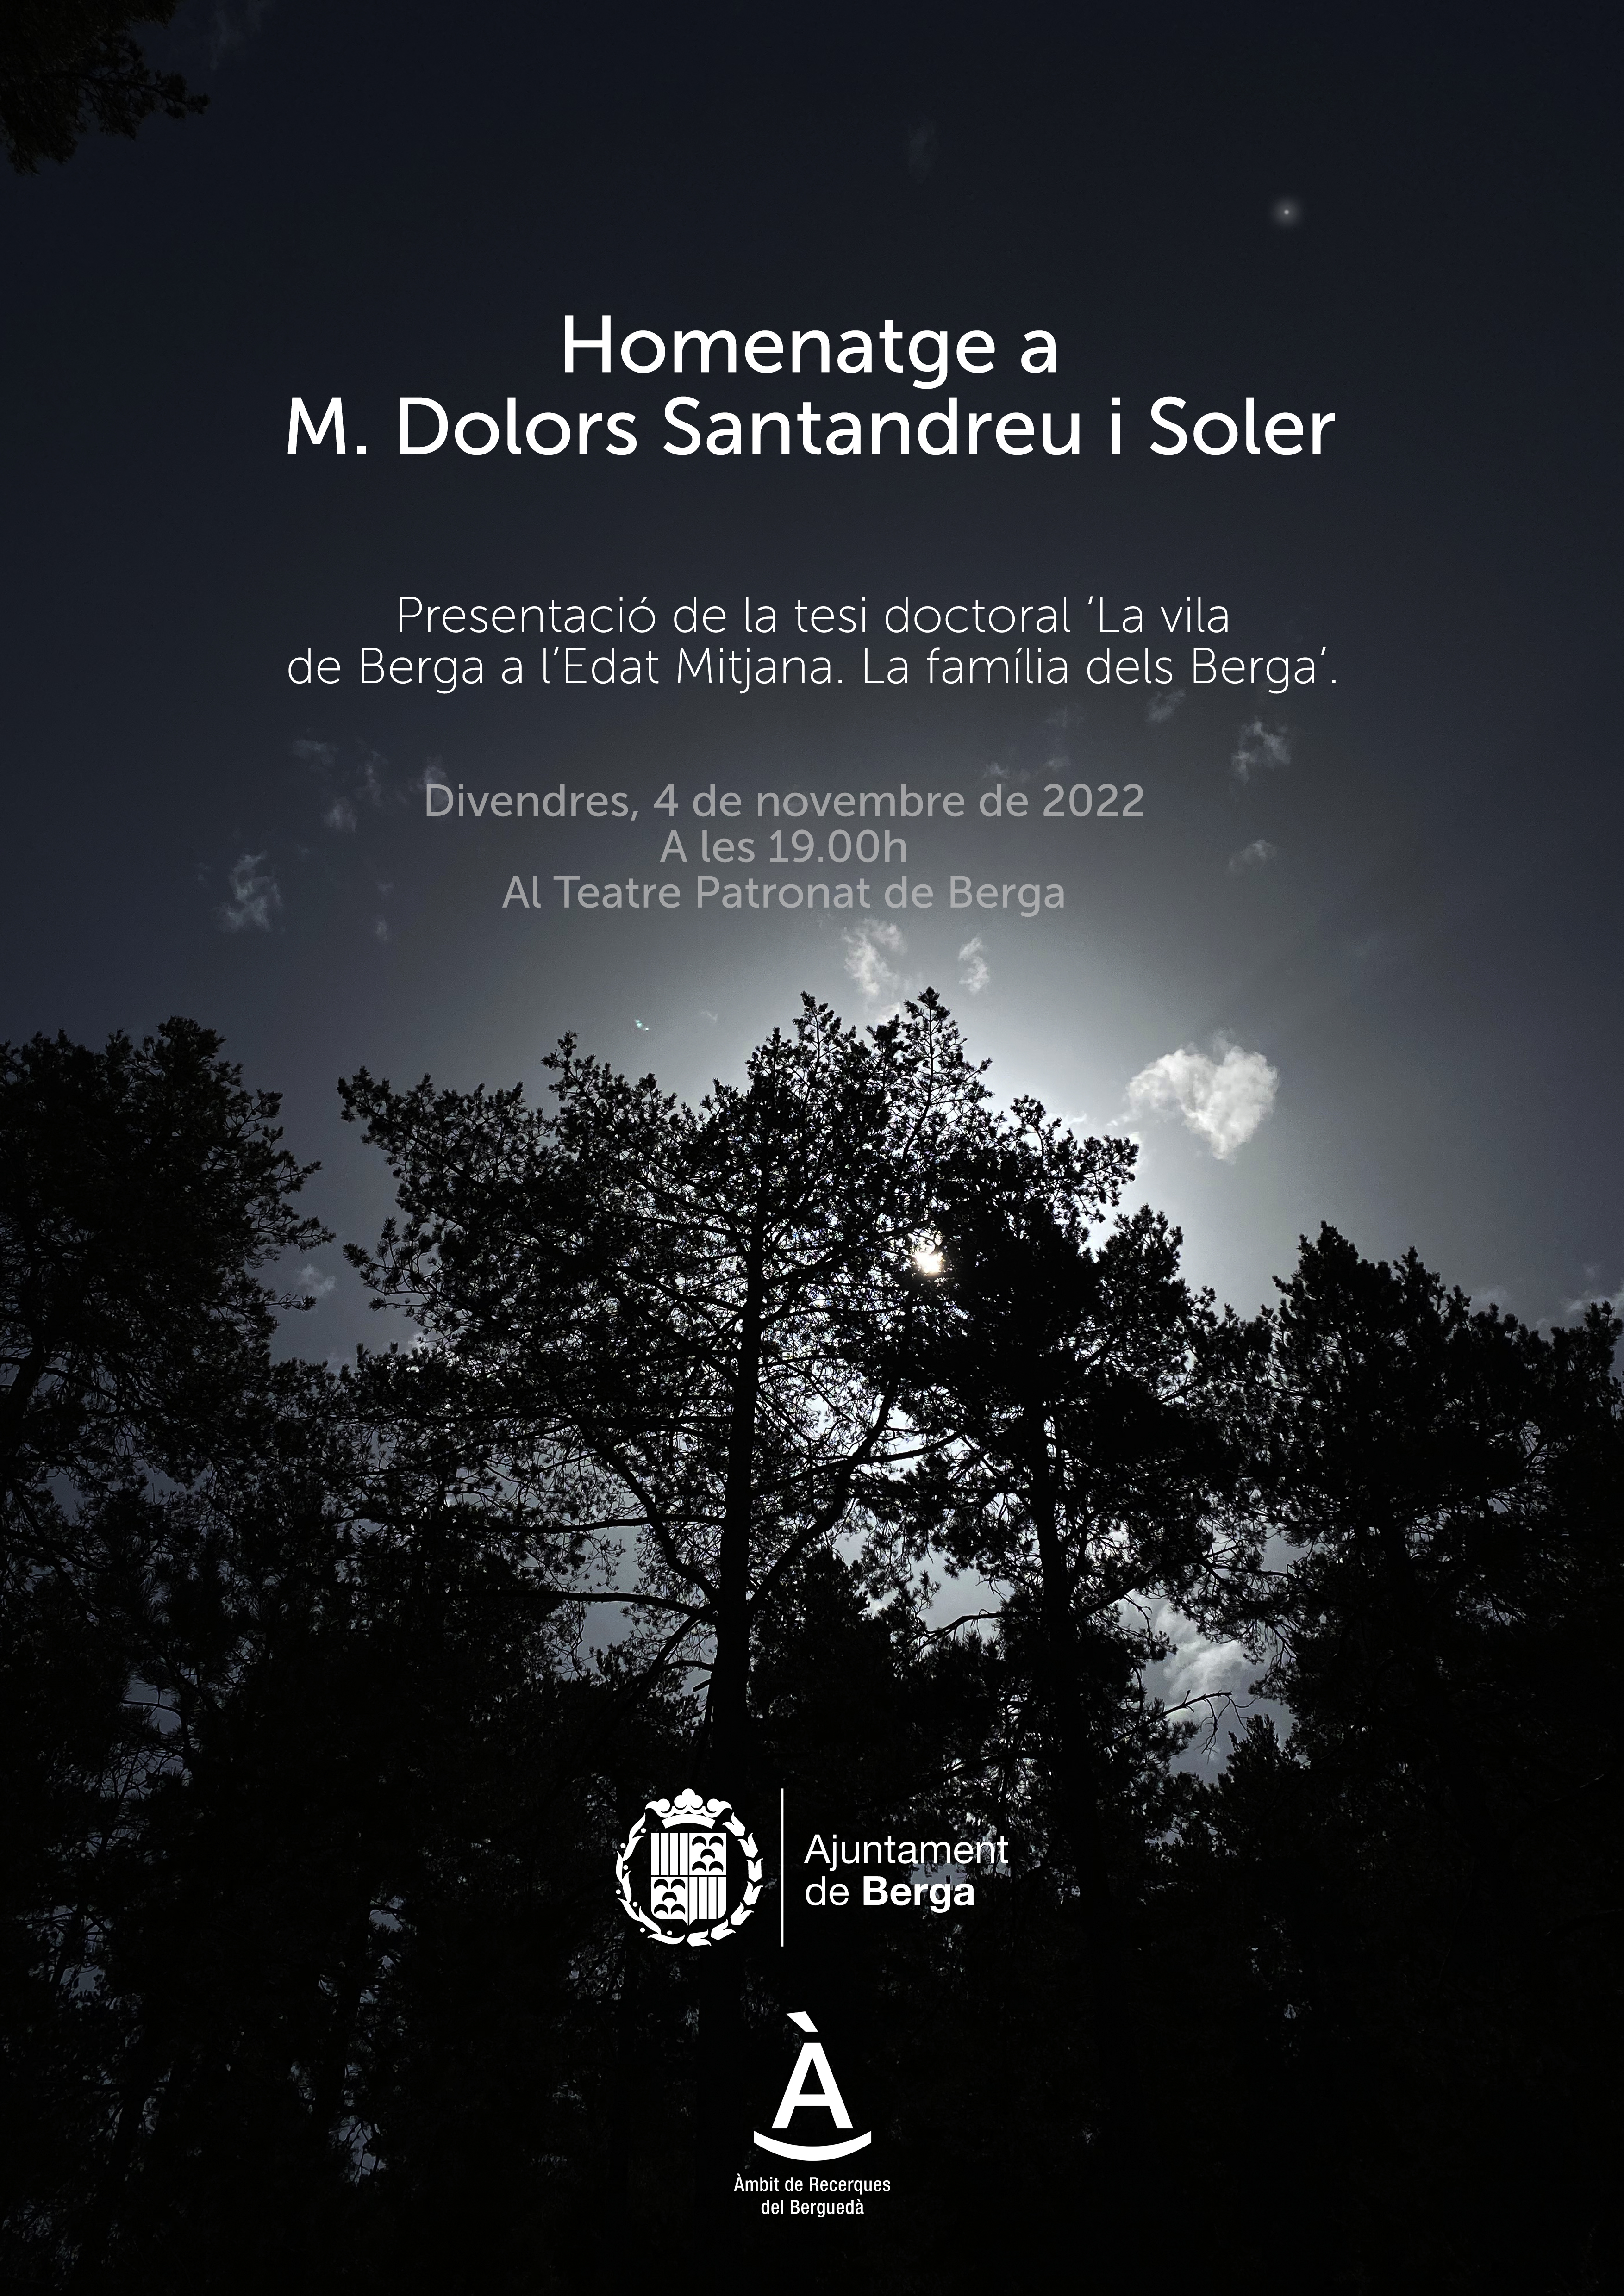 Homenatge a M. Dolors Santandreu i Soler 